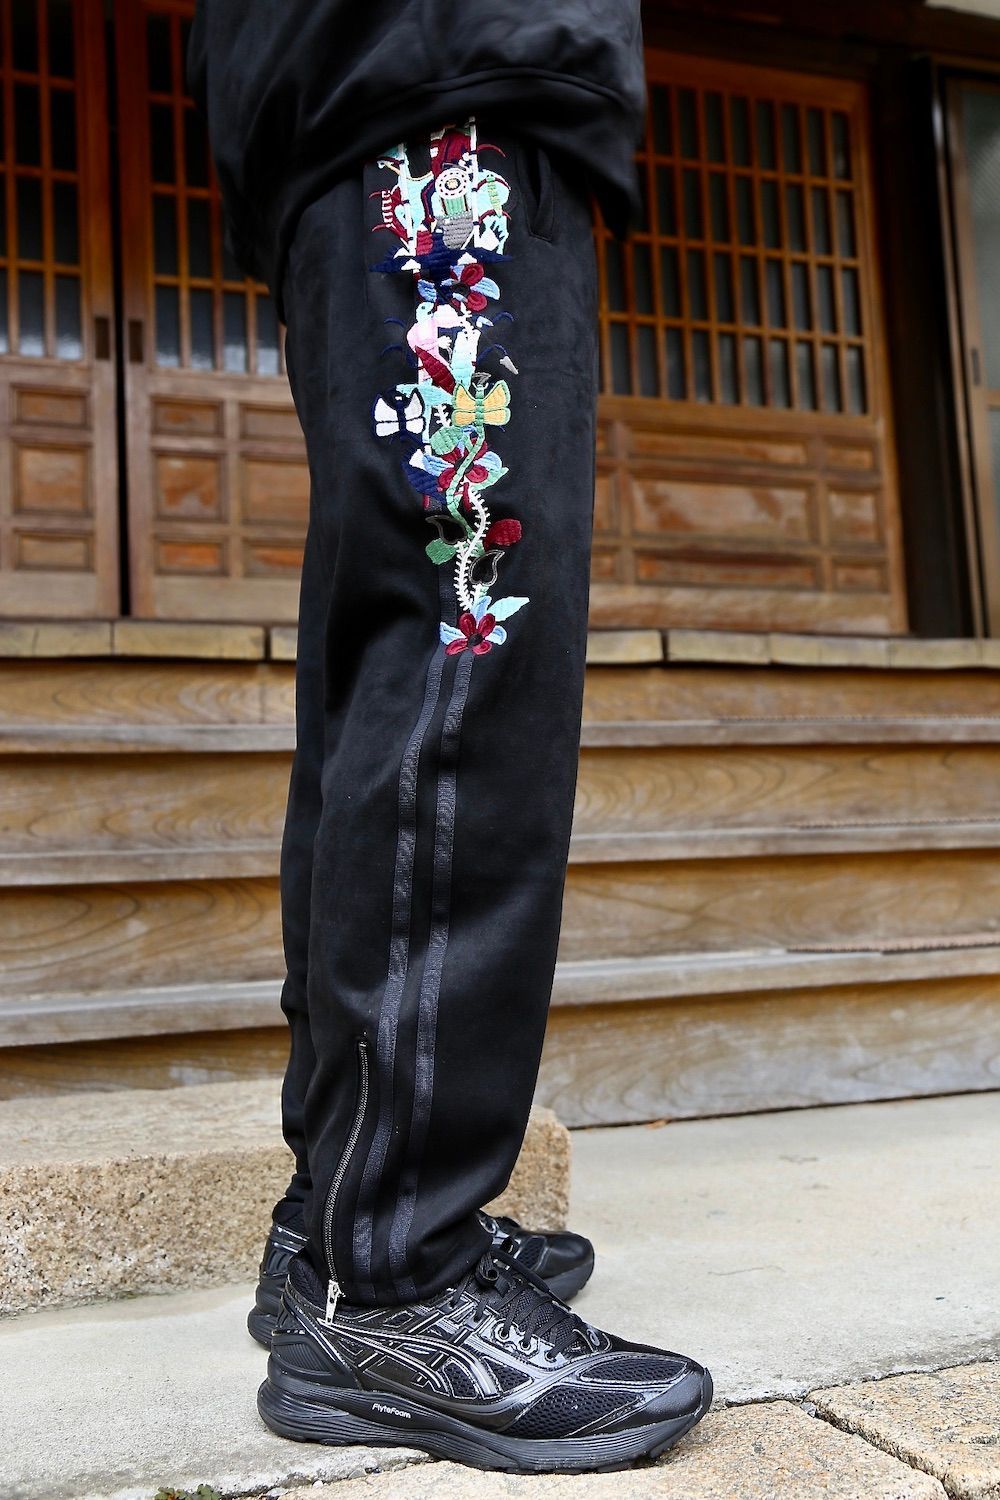 16500円通販 サイト レビュー高評価の商品 doublet 20aw カオス刺繍 ...